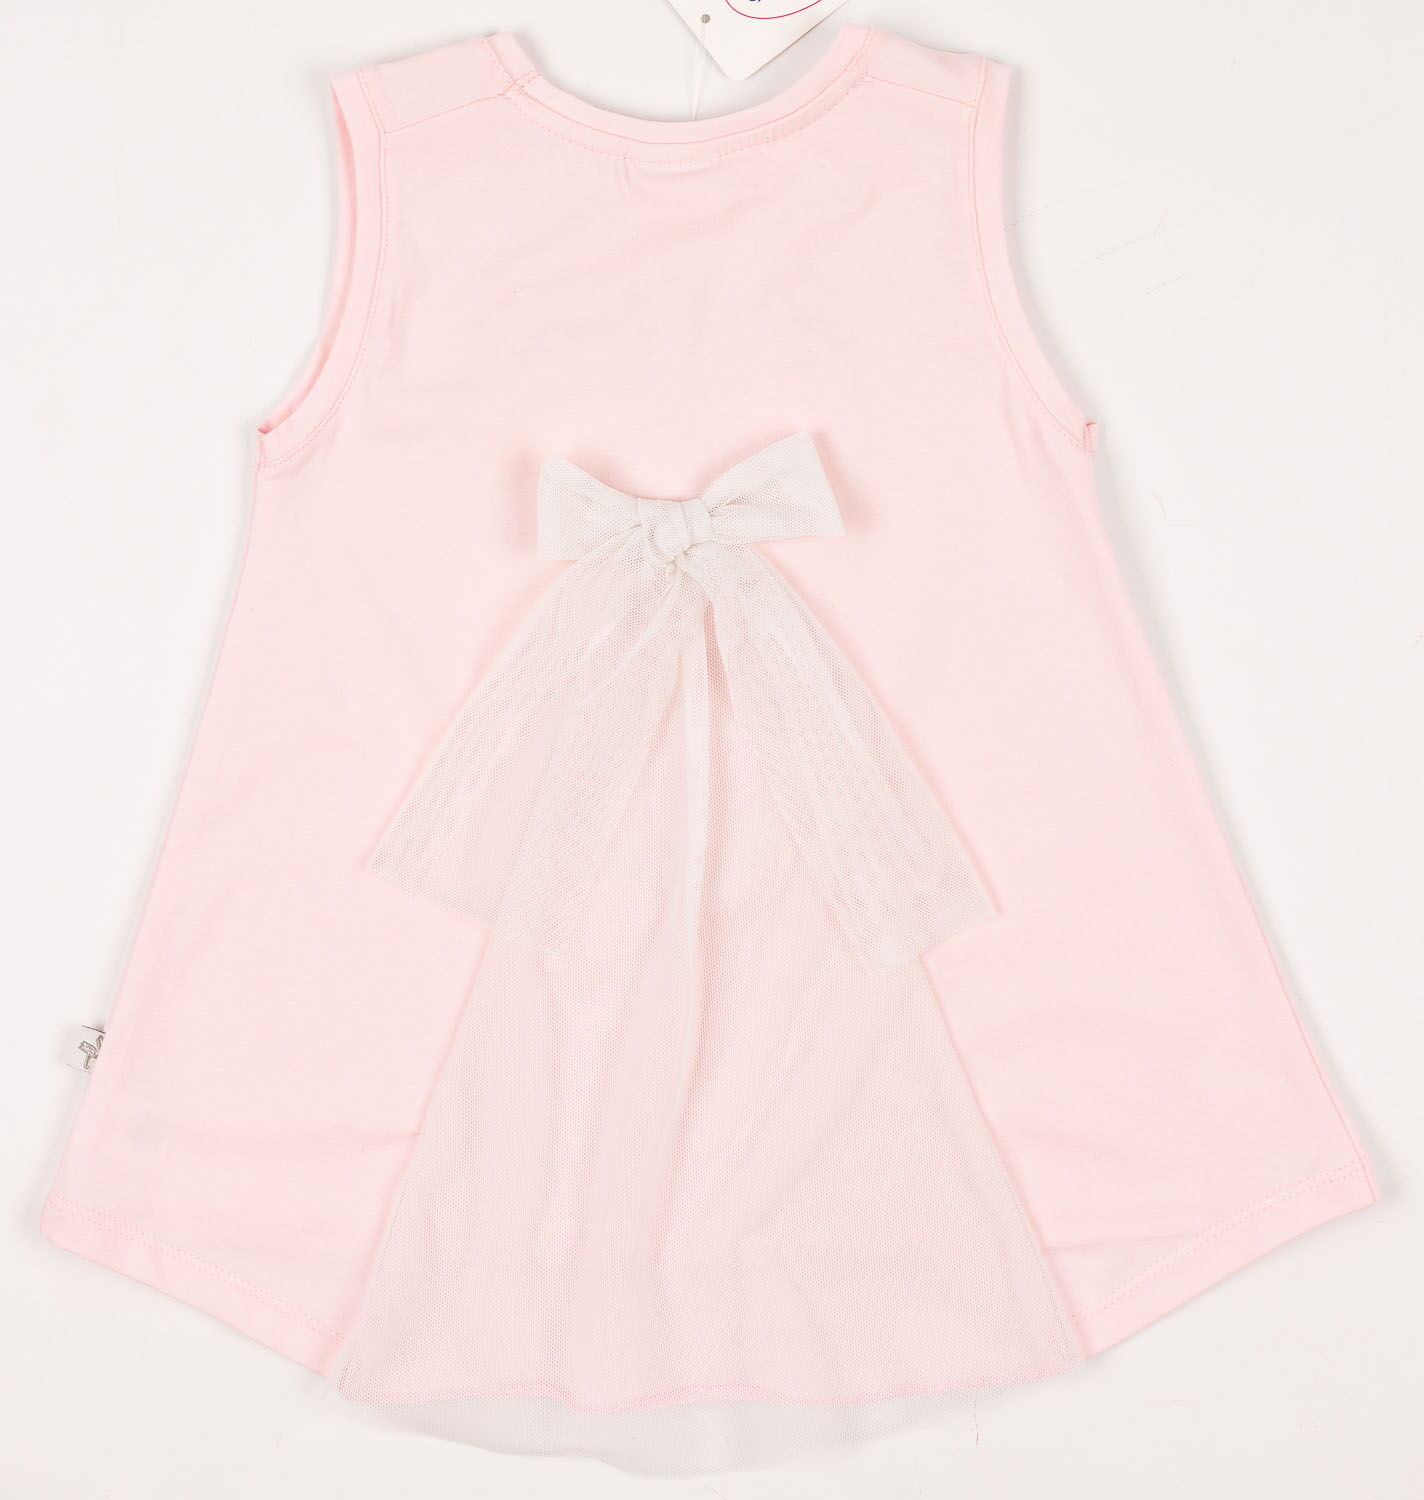 Комплект для девочки (майка+бриджи) Фламинго розовый 898-416 - купить